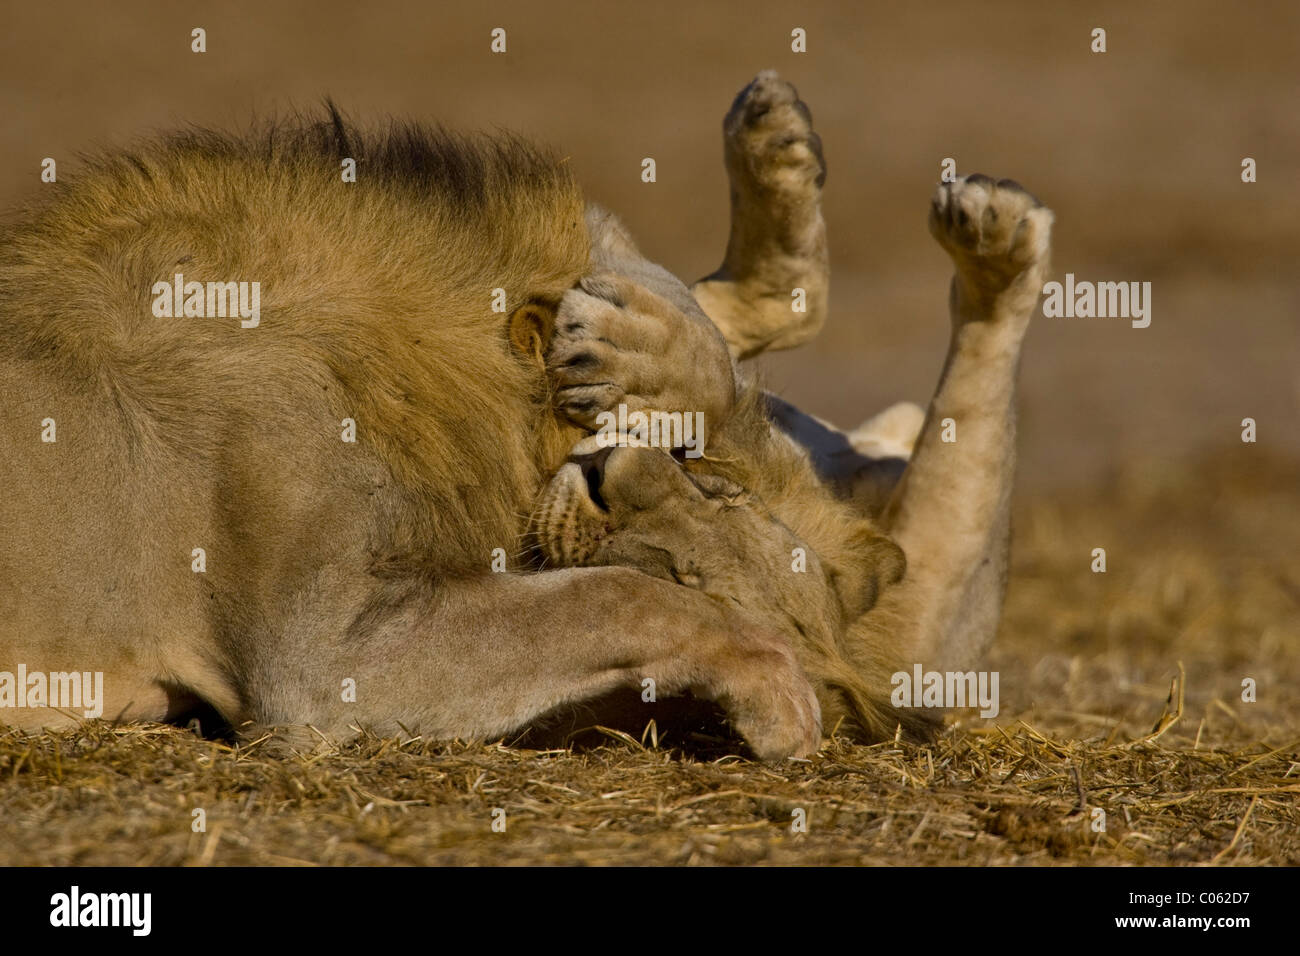 Deux lions jouant, Etosha National Park, Namibie Banque D'Images